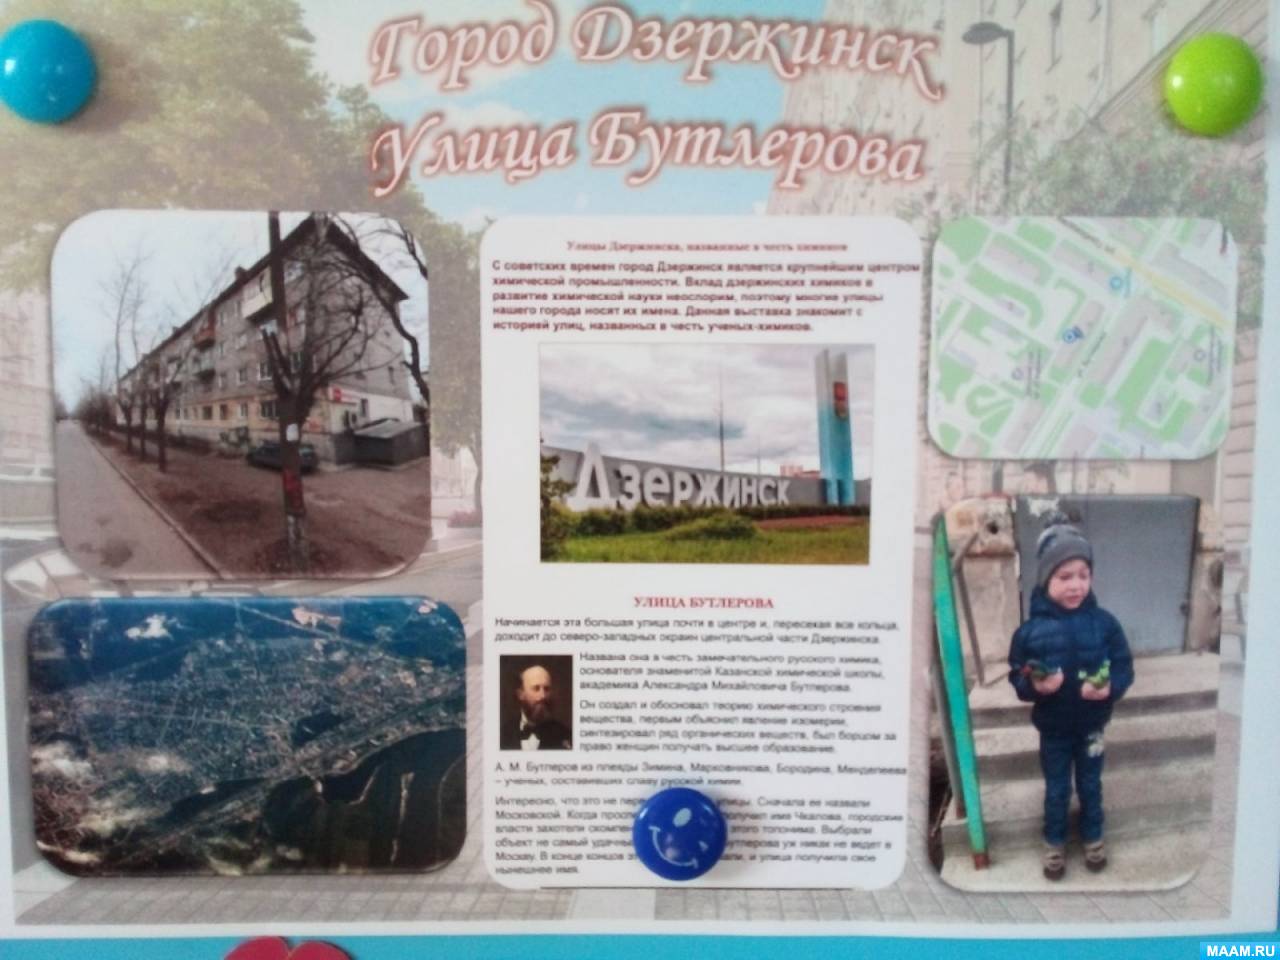 Конспект ООД по ознакомлению с окружающим в подготовительной группе «Дзержинск — город химии»